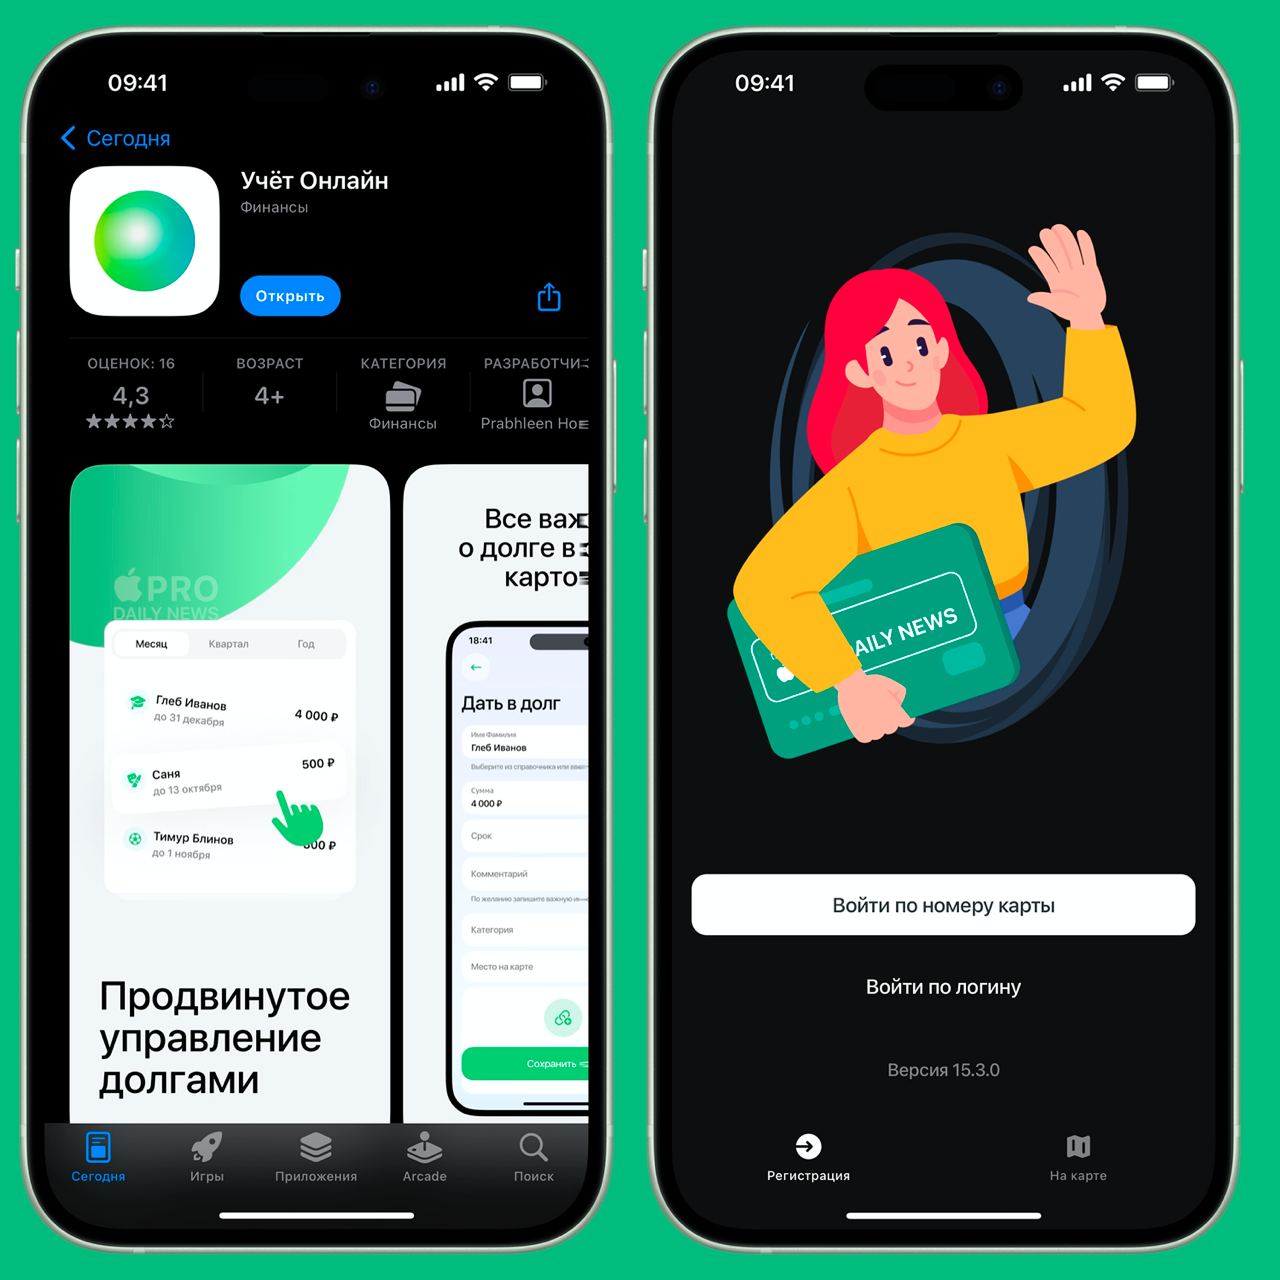 Новая версия приложения для пользователей Сбера продержалась в App Store 3 дня. Теперь её можно бесплатно установить в отделениях банка.